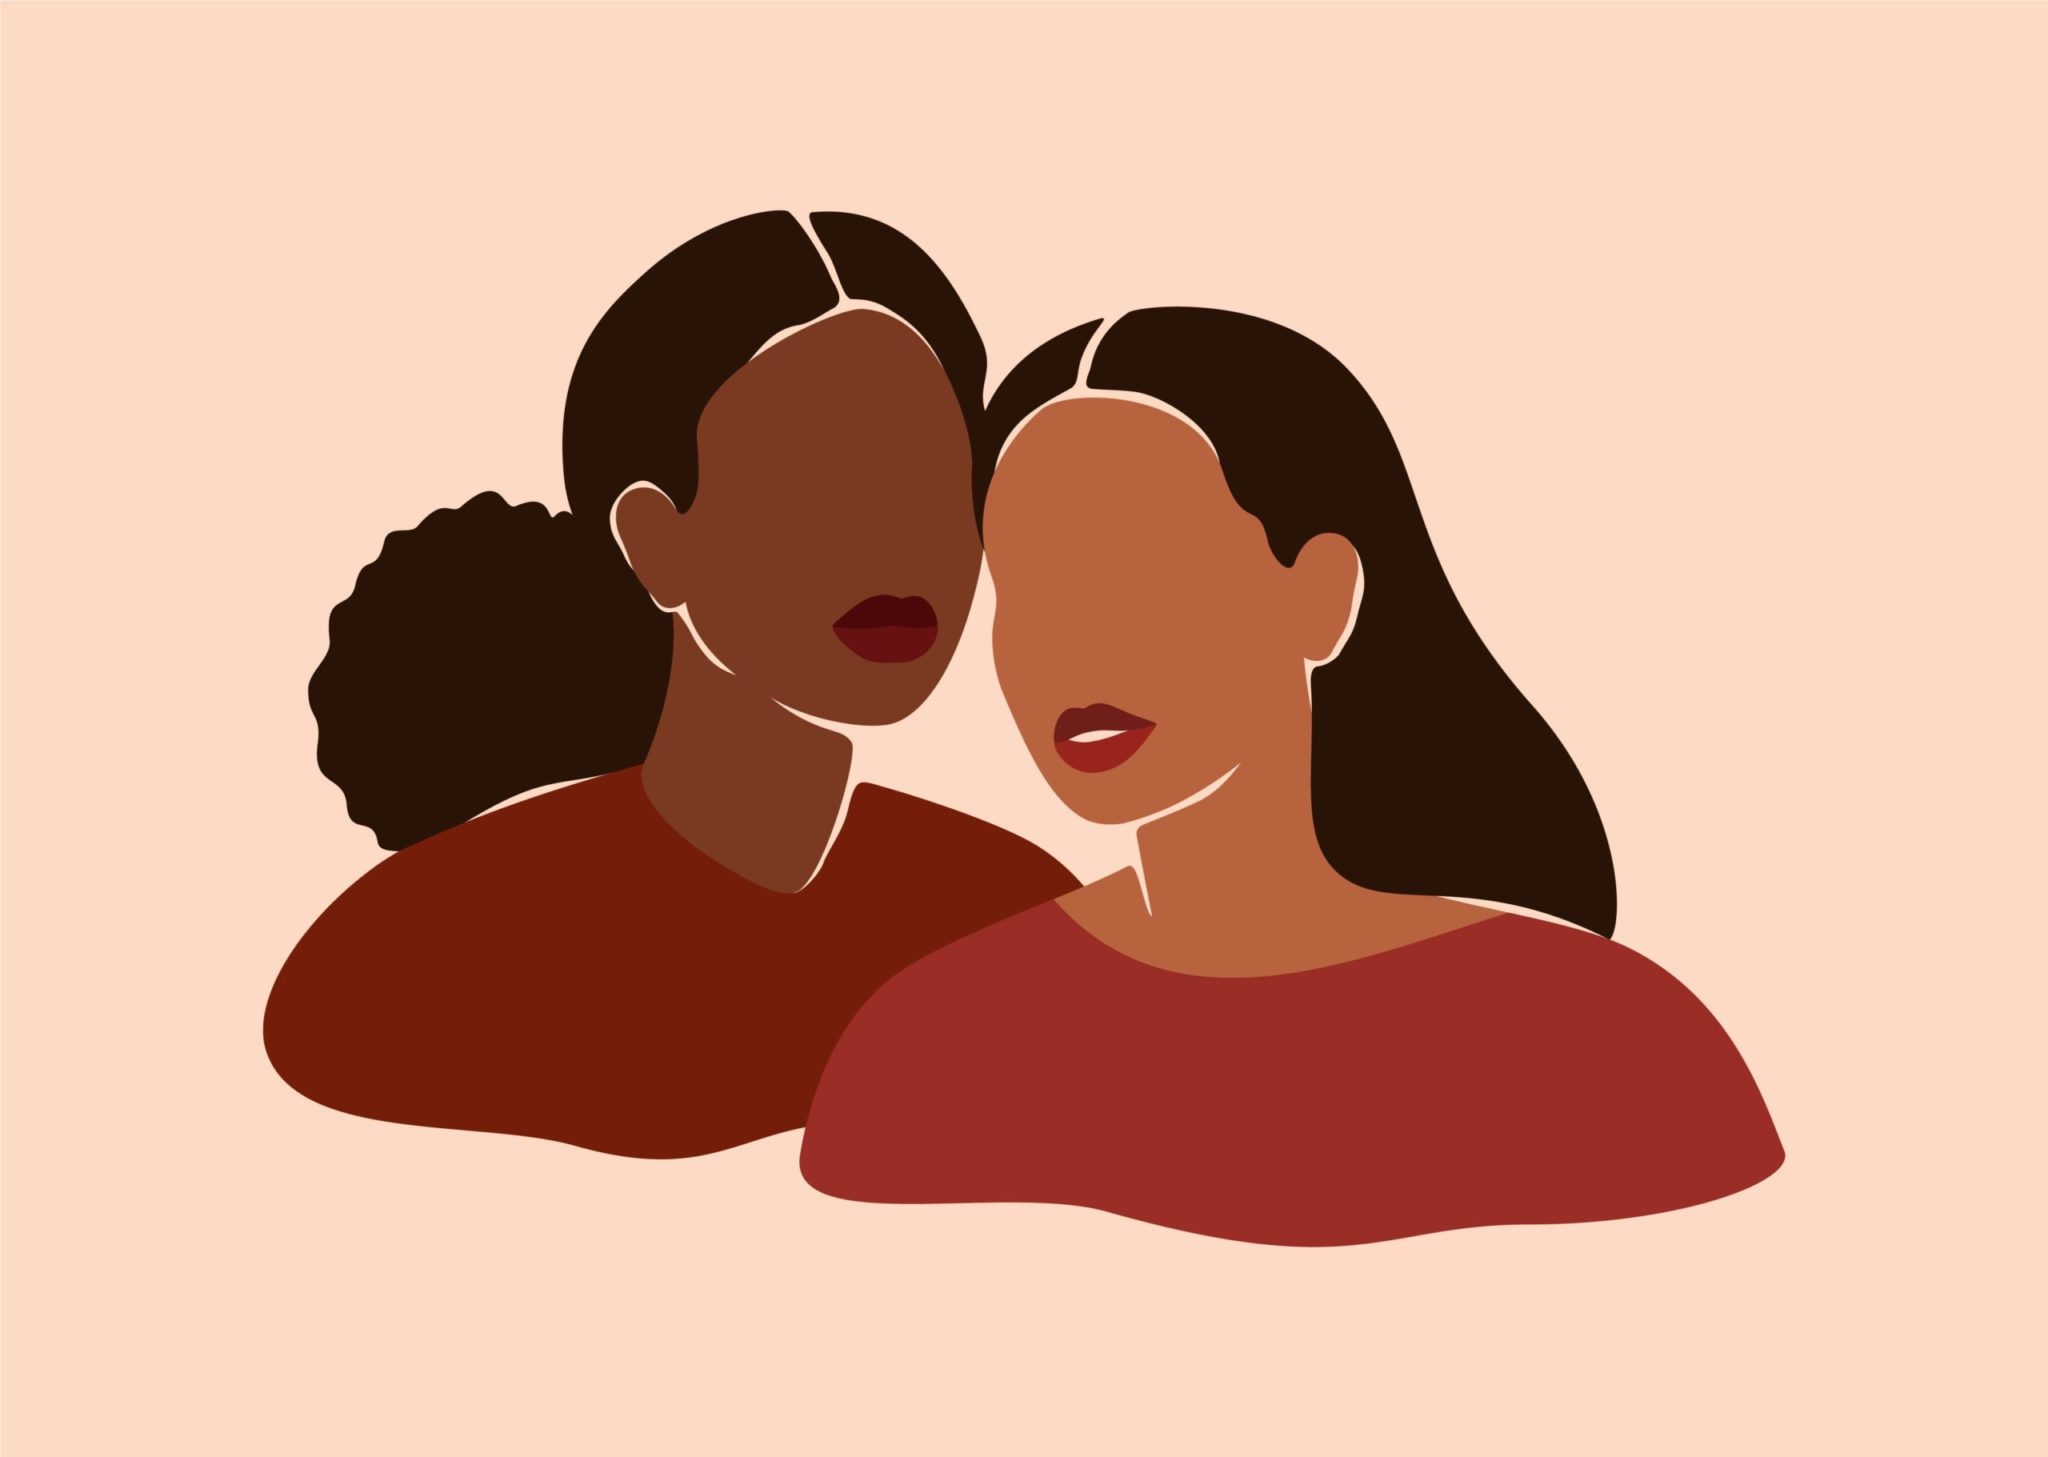 Illustration of Black and Brown transgender women over a light pink background.